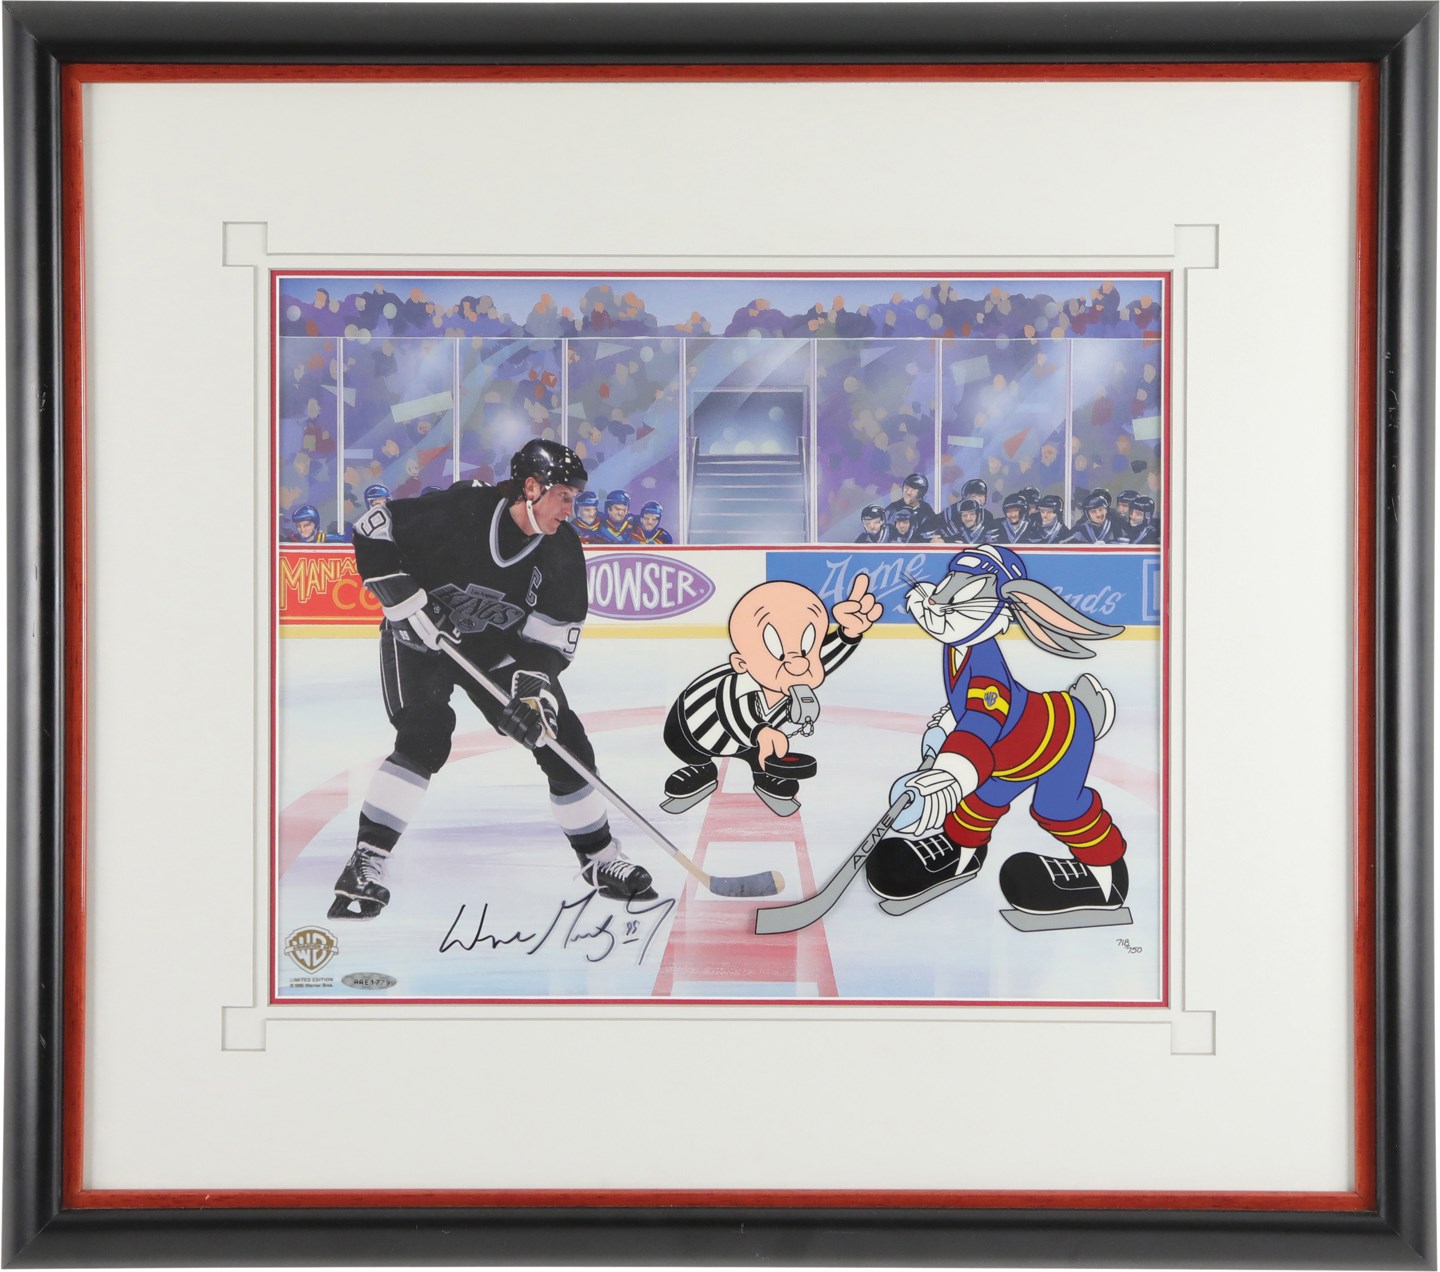 - 1995 Wayne Gretzky Signed Limited-Edition Warner Bros. Animation Cel (Upper Deck)